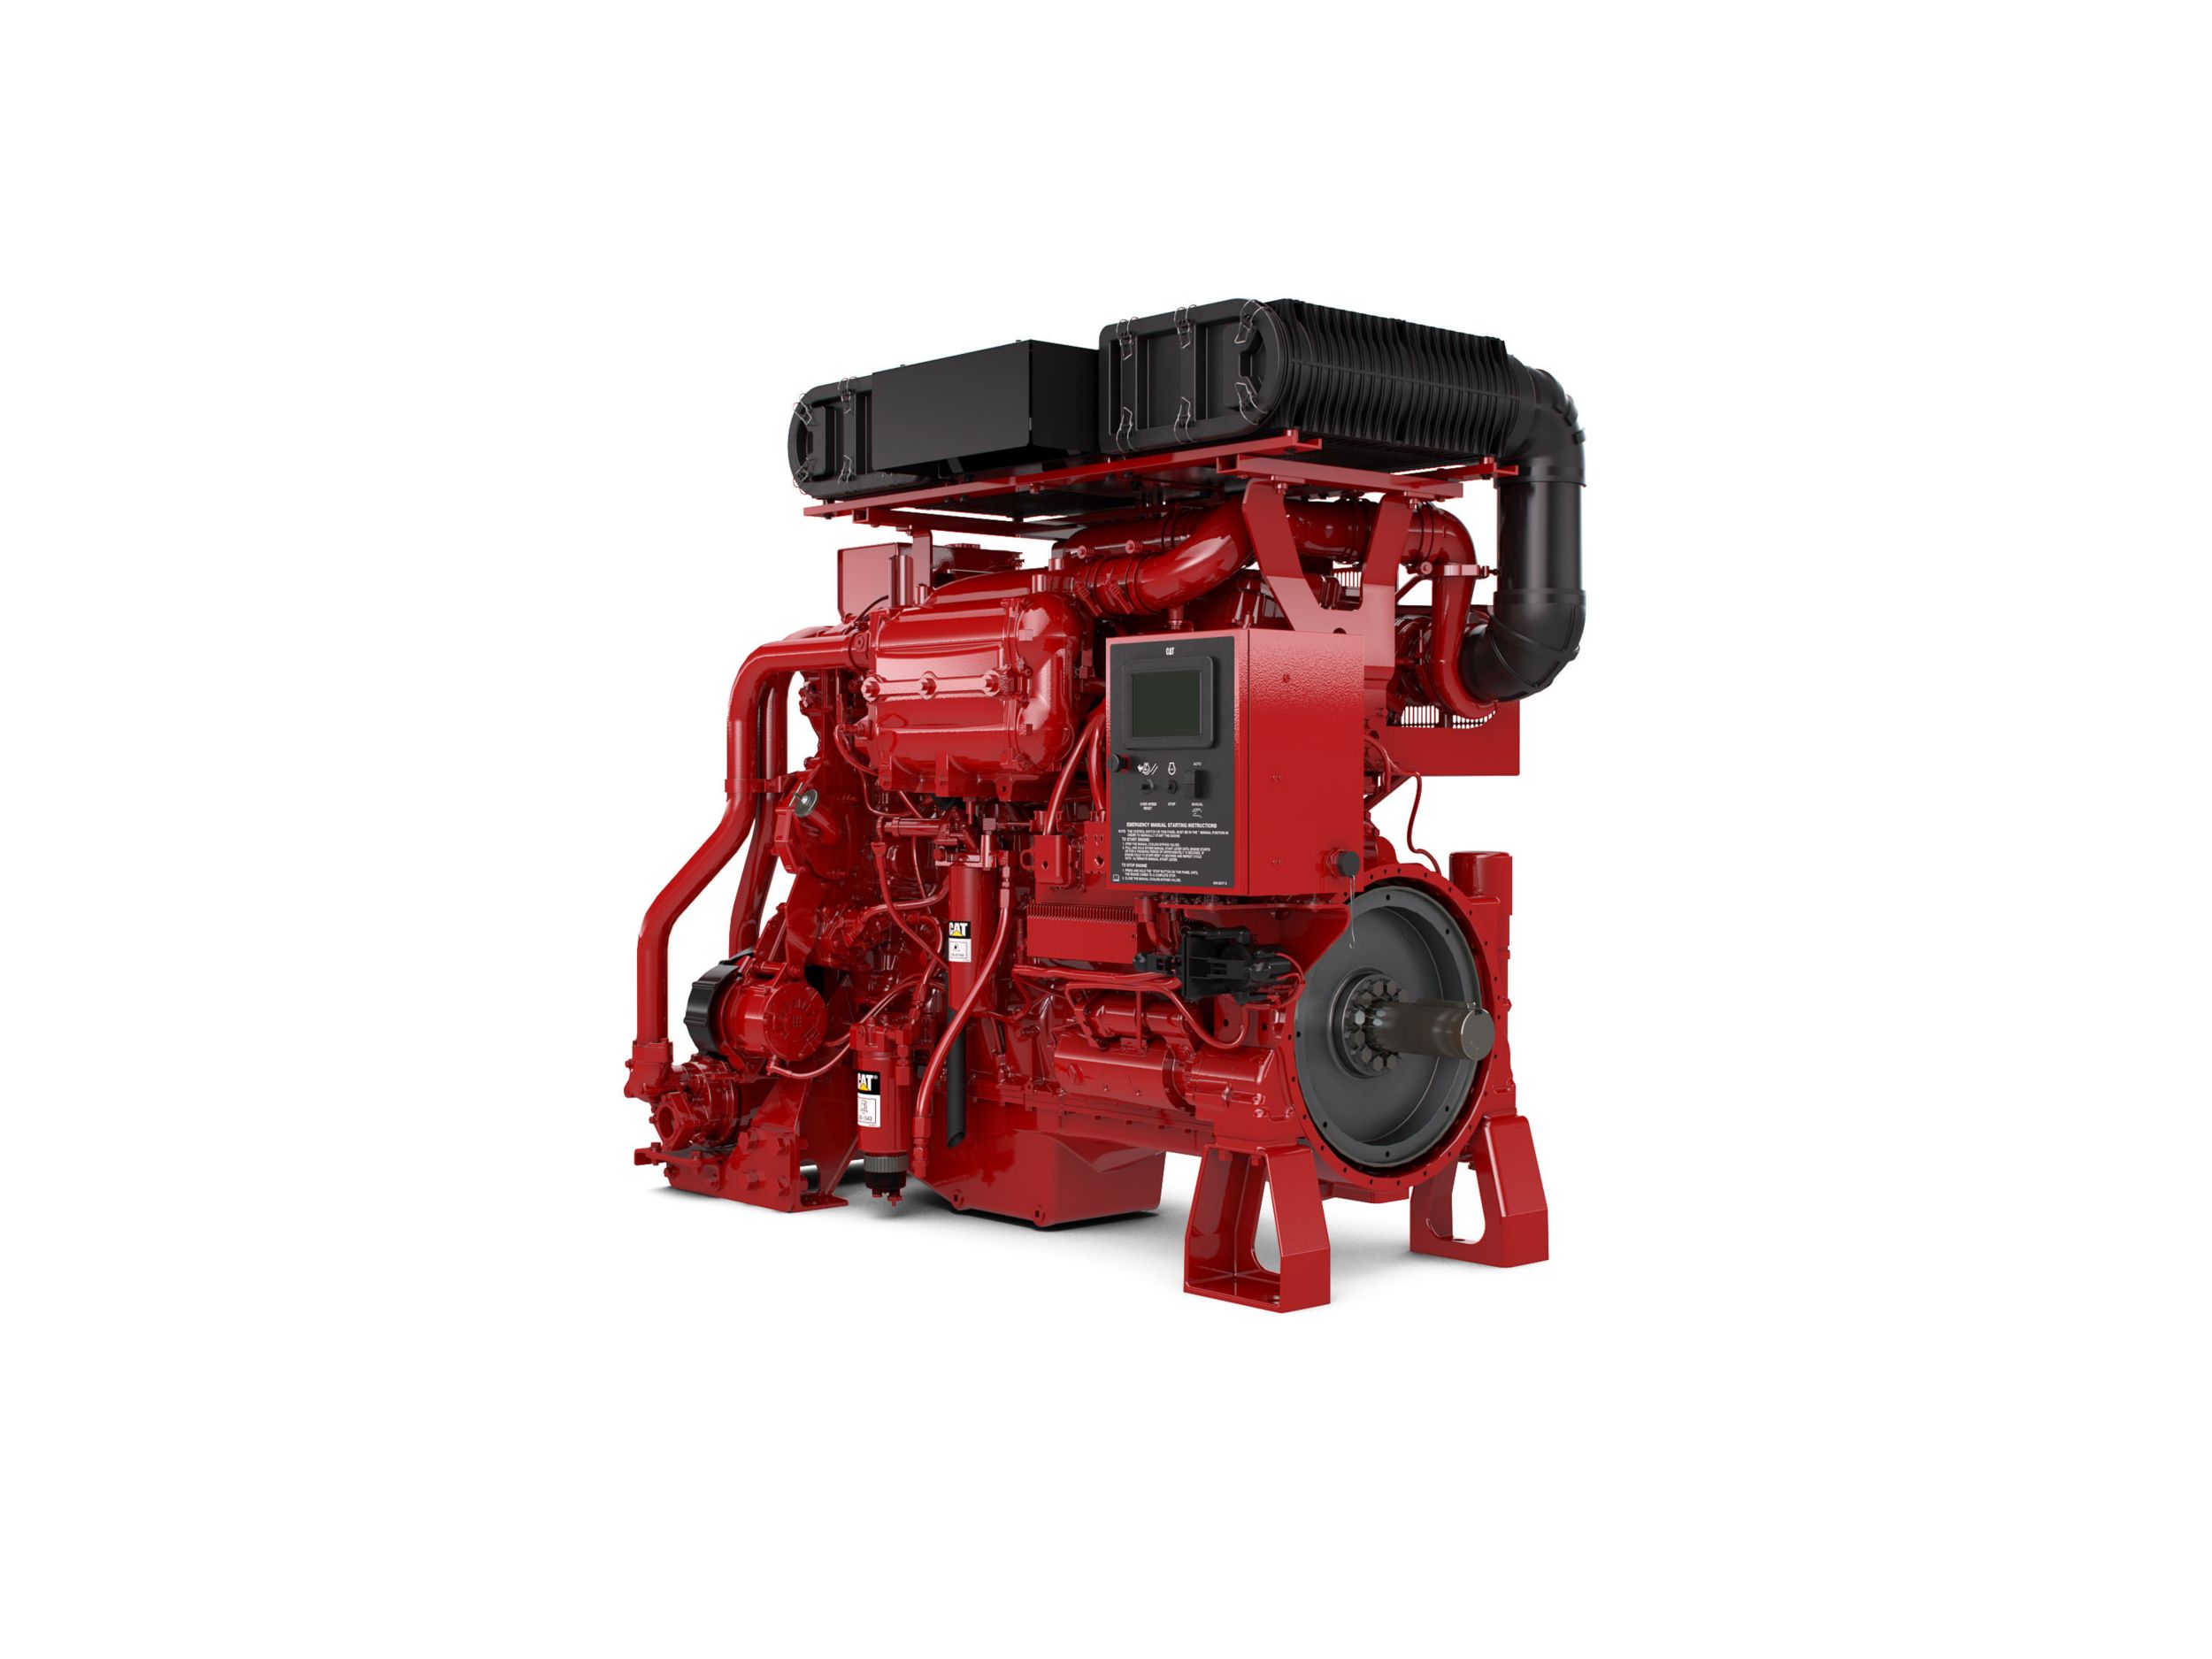 Дизельный двигатель C18 ACERT для пожарных насосов — для стран с высокими и более низкими экологическими требованиями